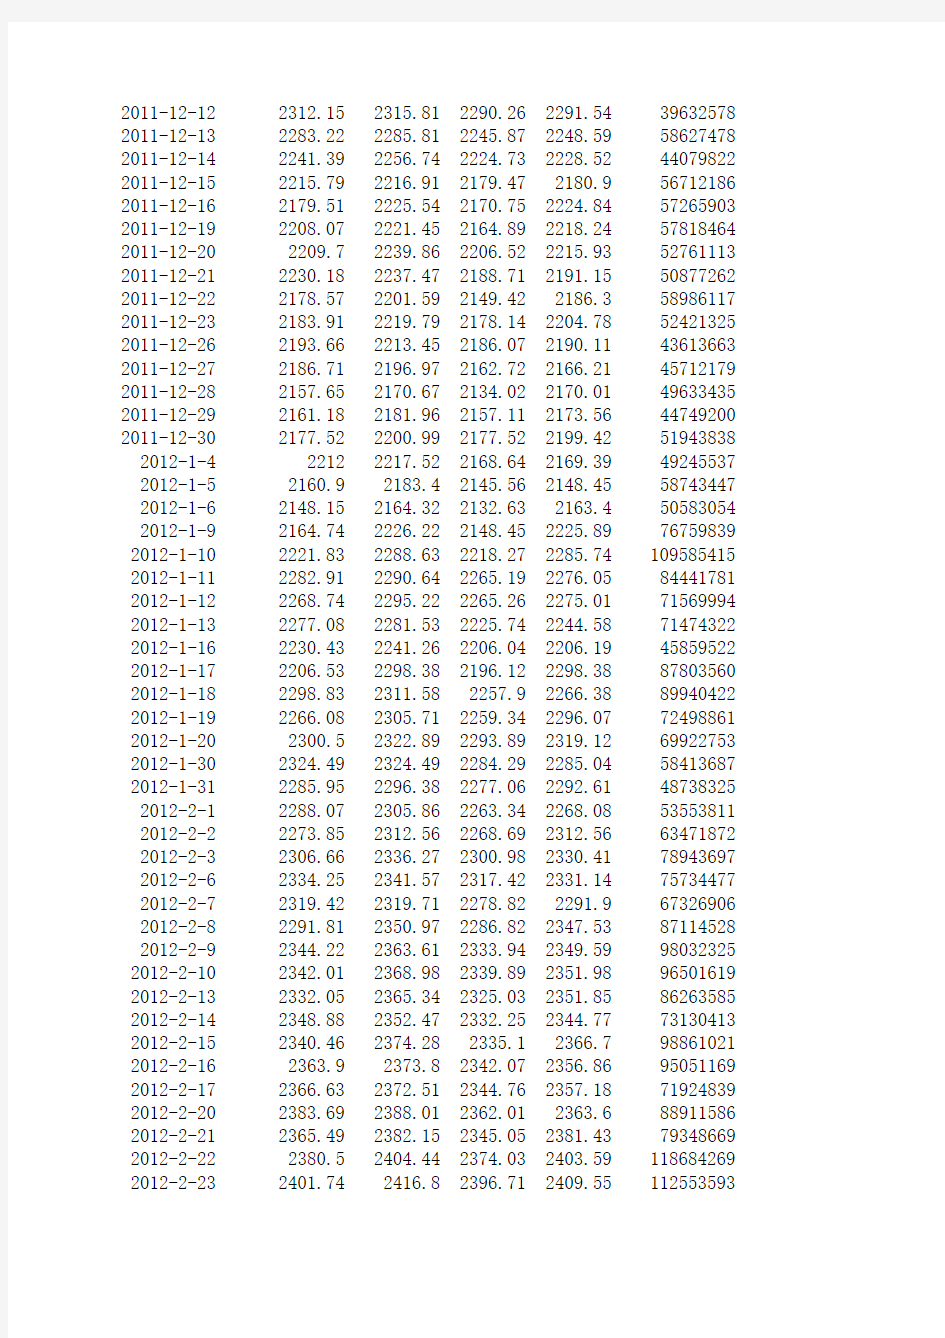 上证指数历史数据2011-2015